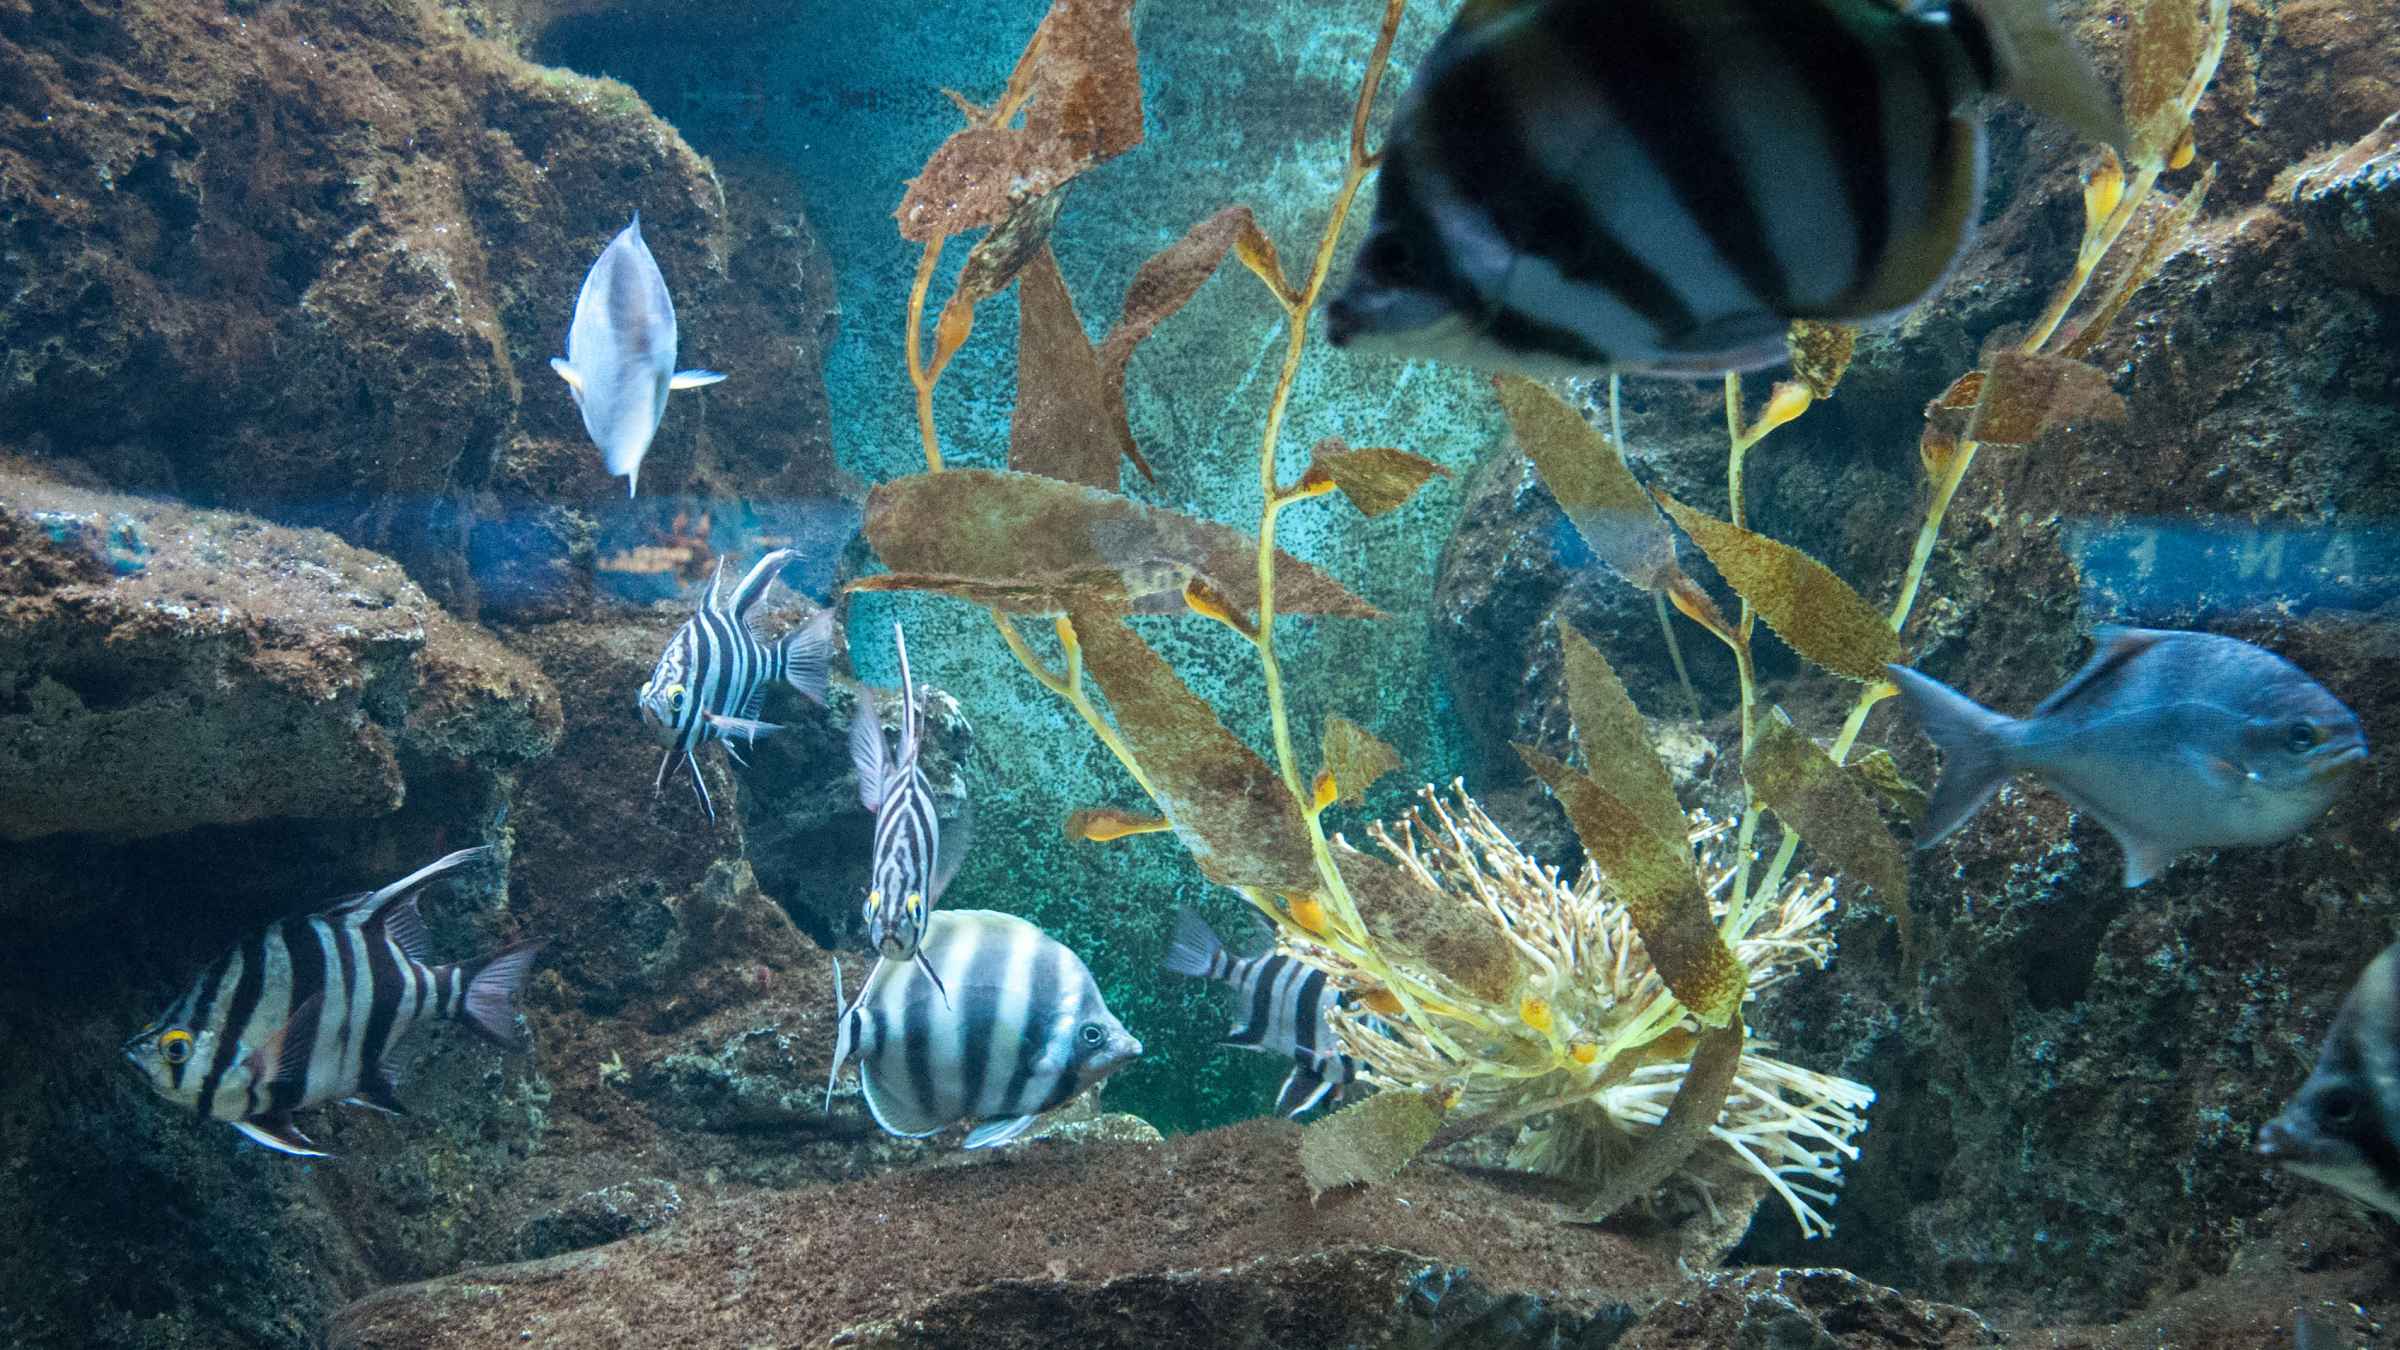 shedd aquarium guided tour